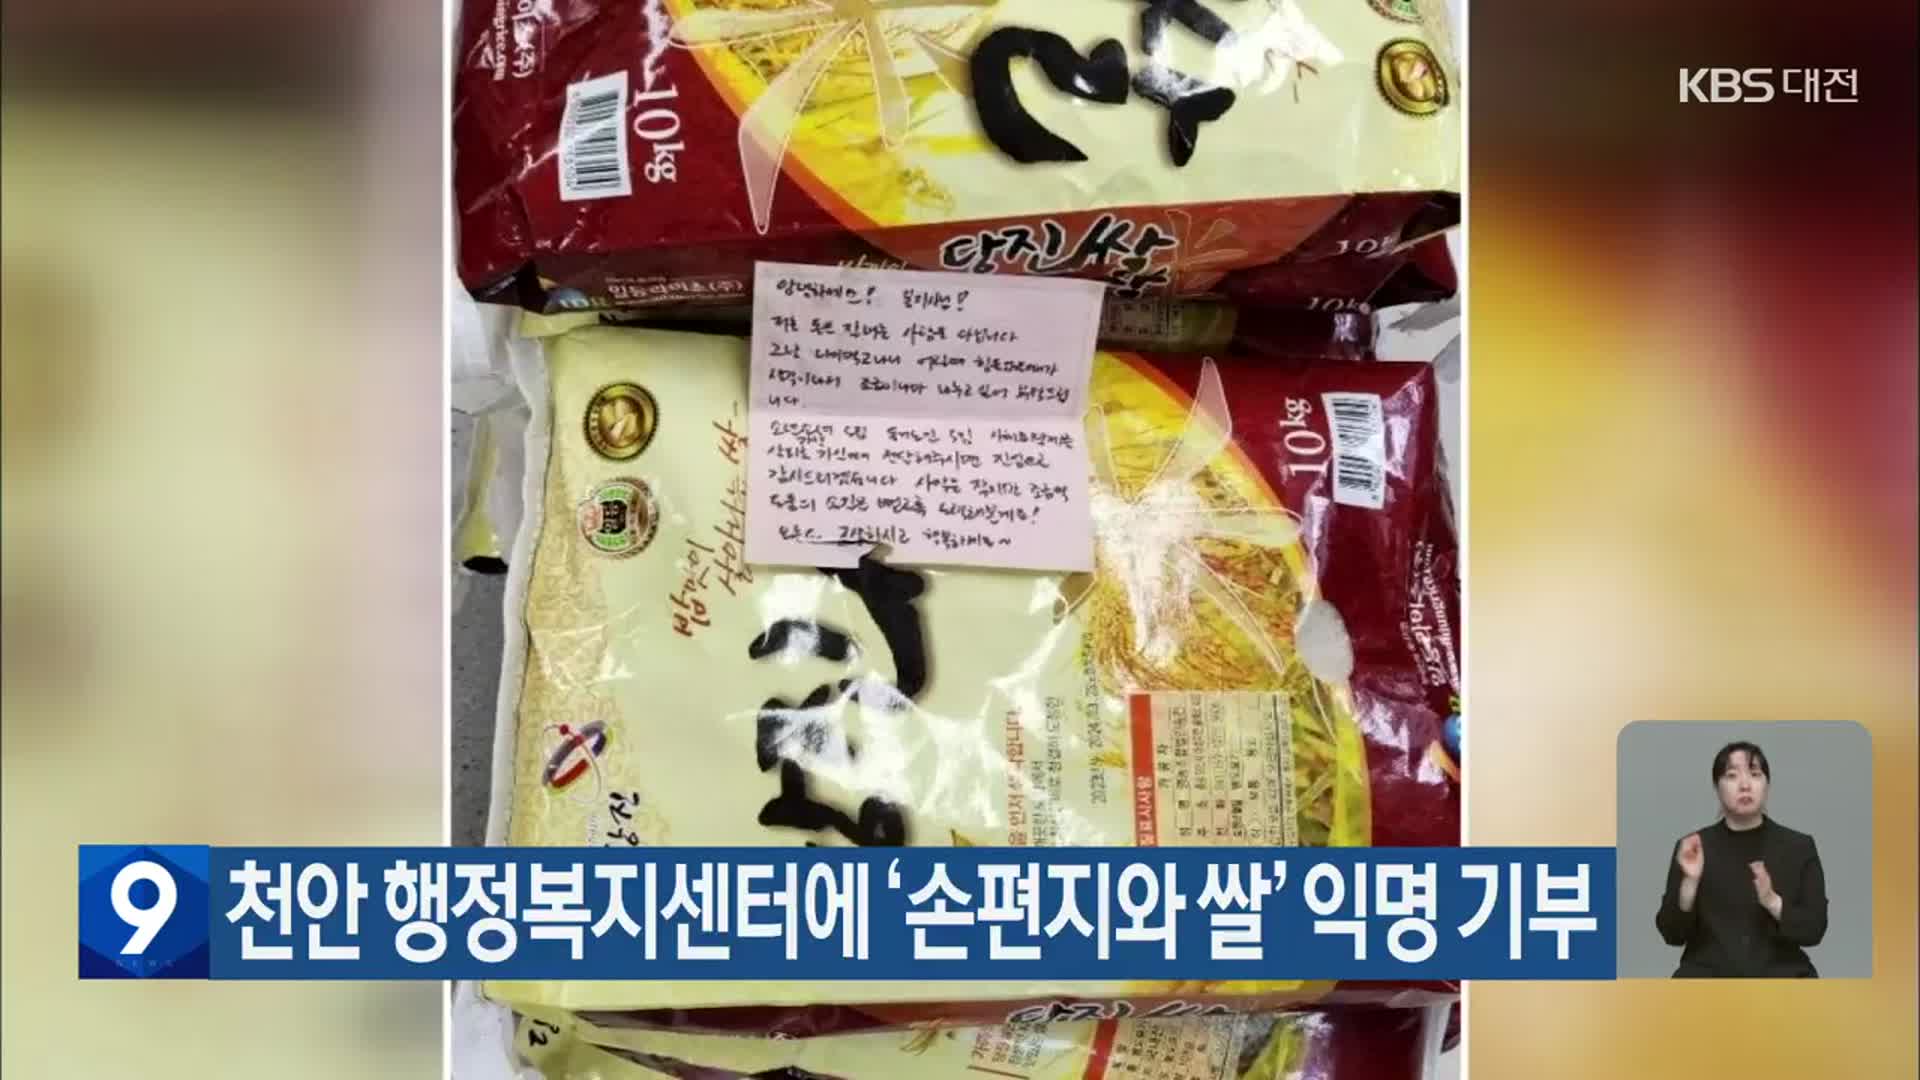 천안 행정복지센터에 ‘손편지와 쌀’ 익명 기부